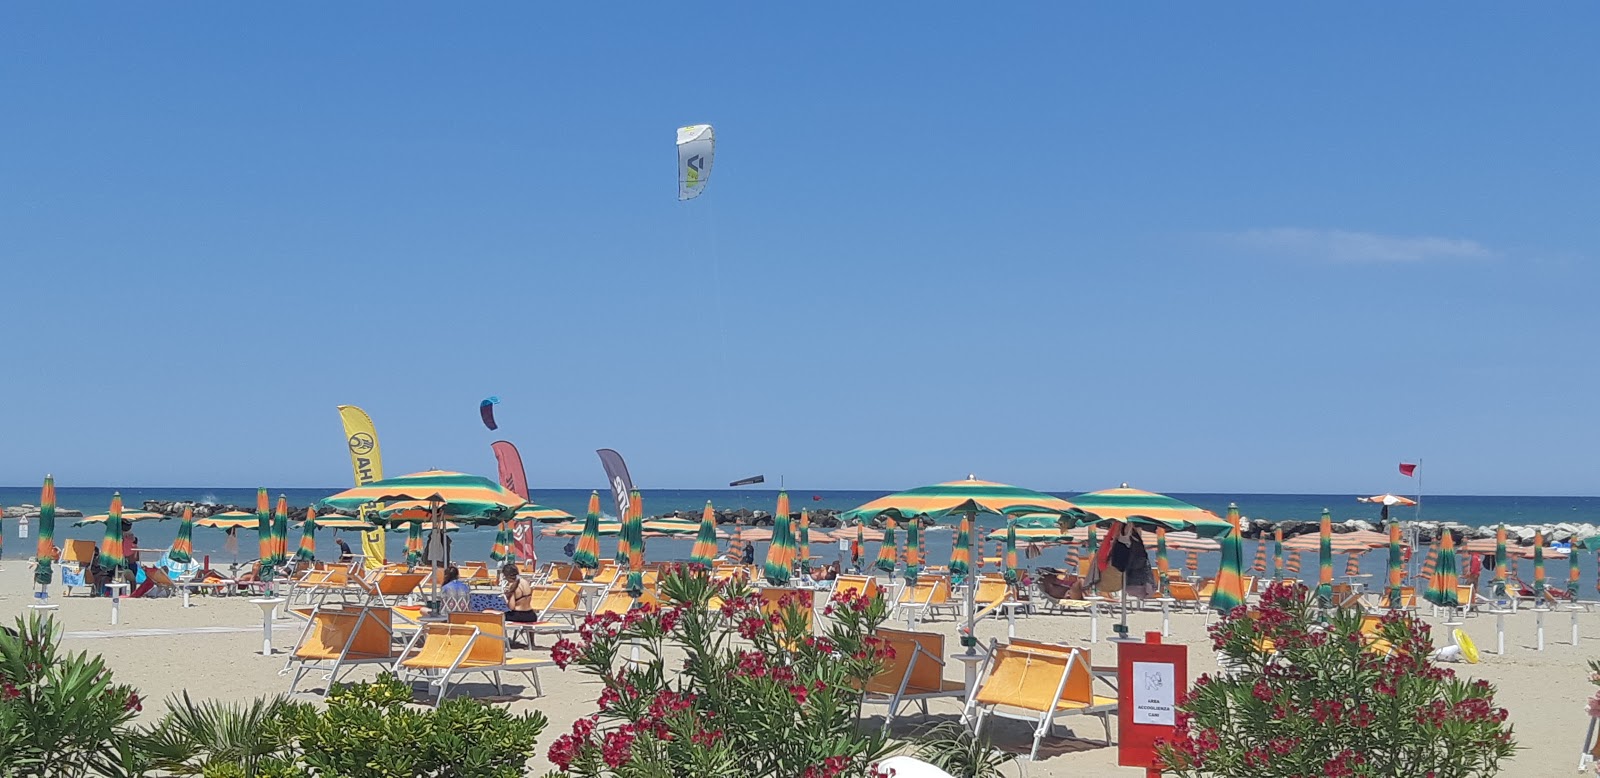 Foto von Spiaggia di Cattolica II mit geräumige bucht